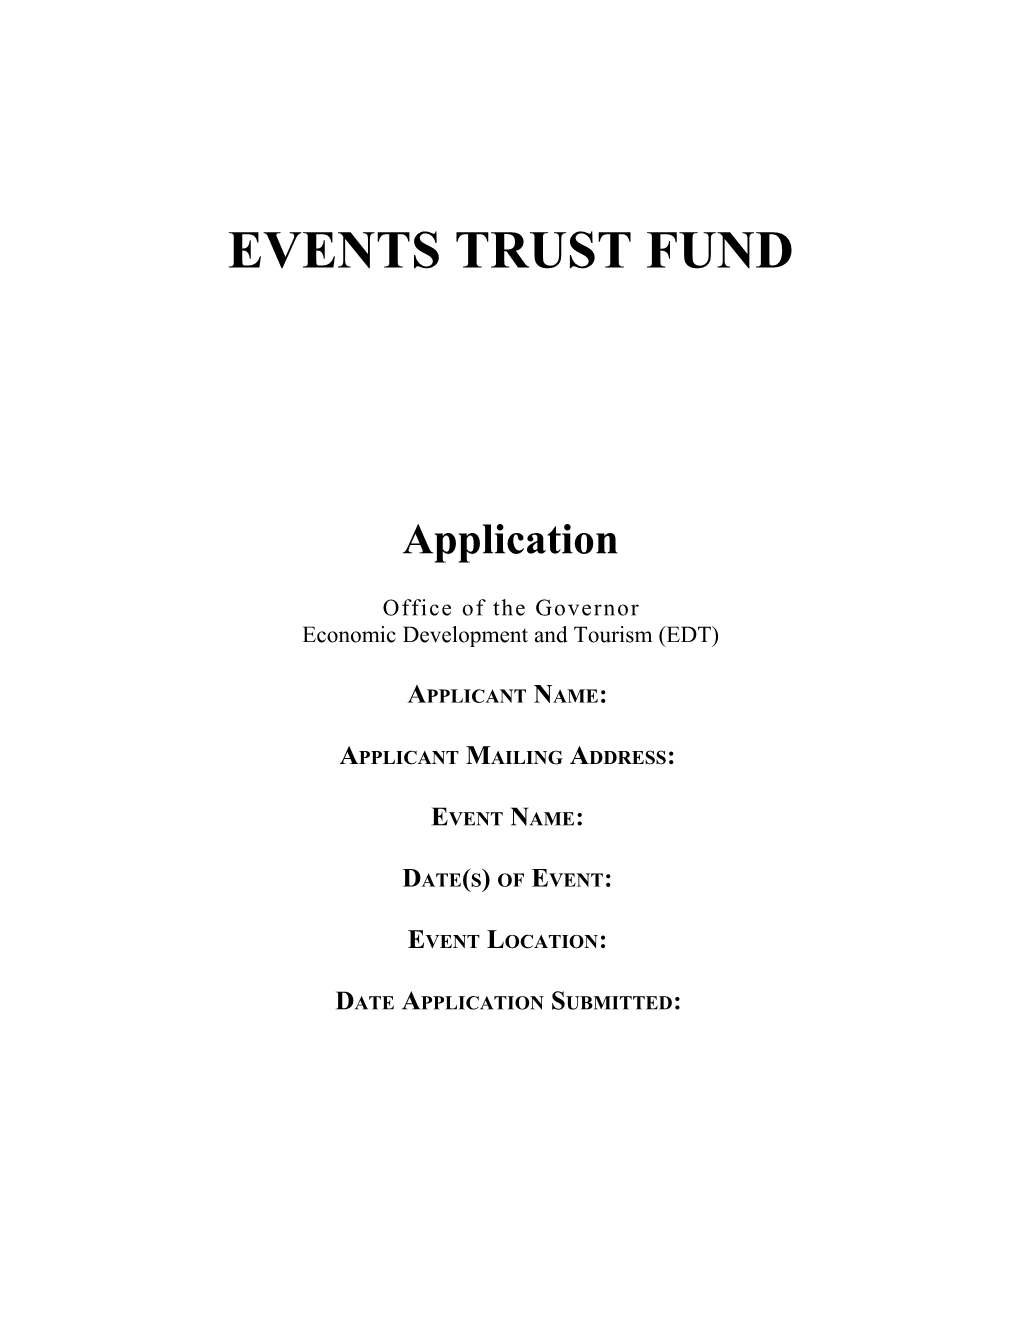 96-1714 Events Trust Frund Request Worksheet